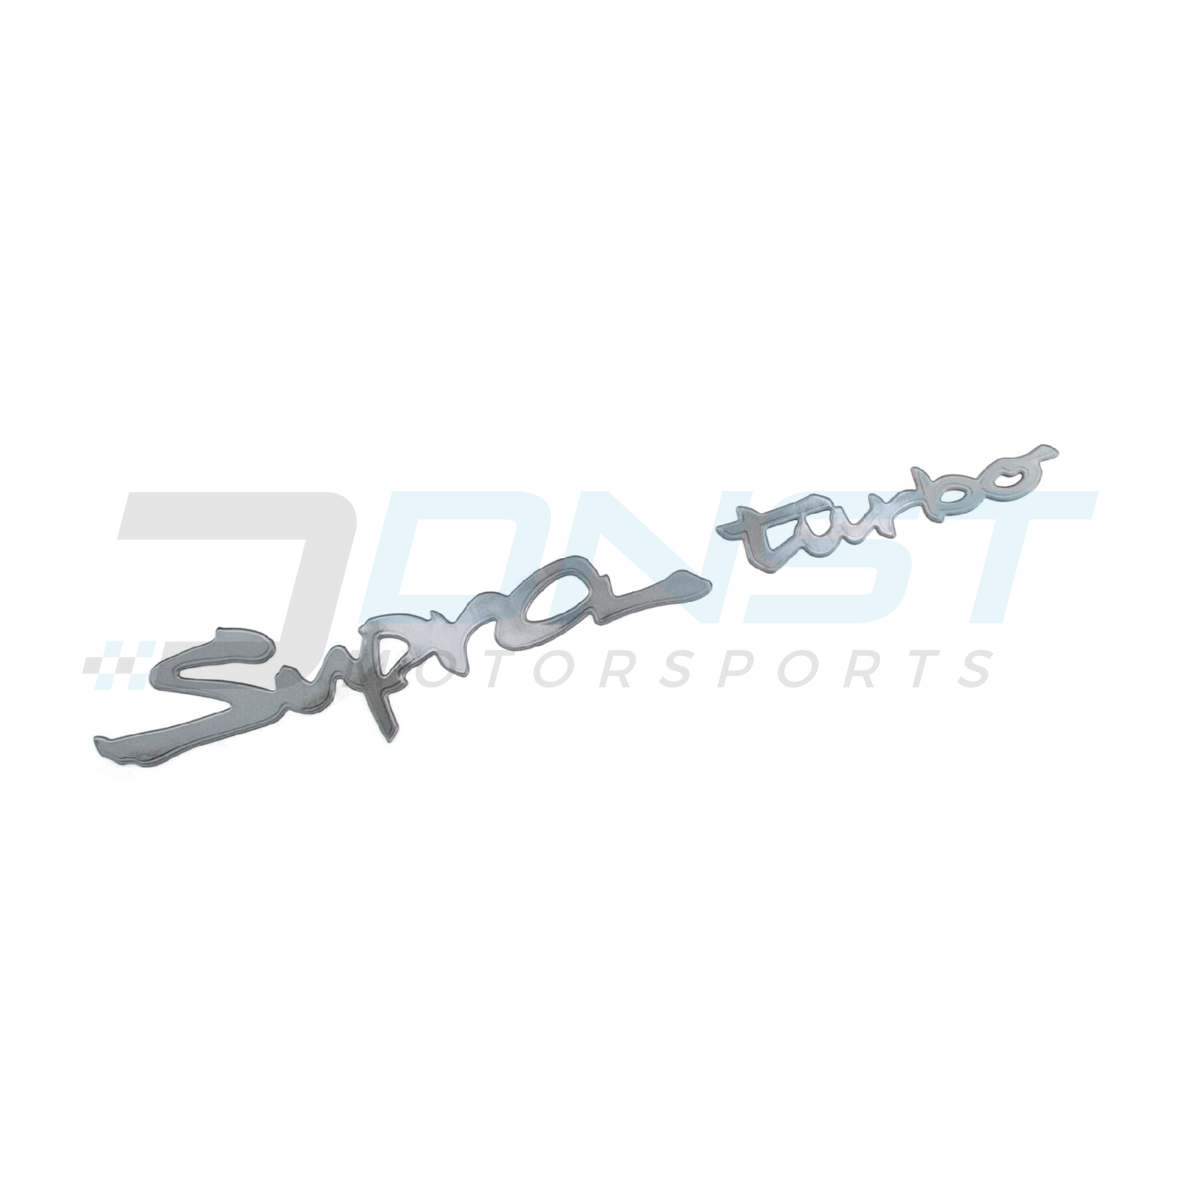 Genuine OEM Rear "Supra Turbo" Gel Badge JZA80 Toyota Supra